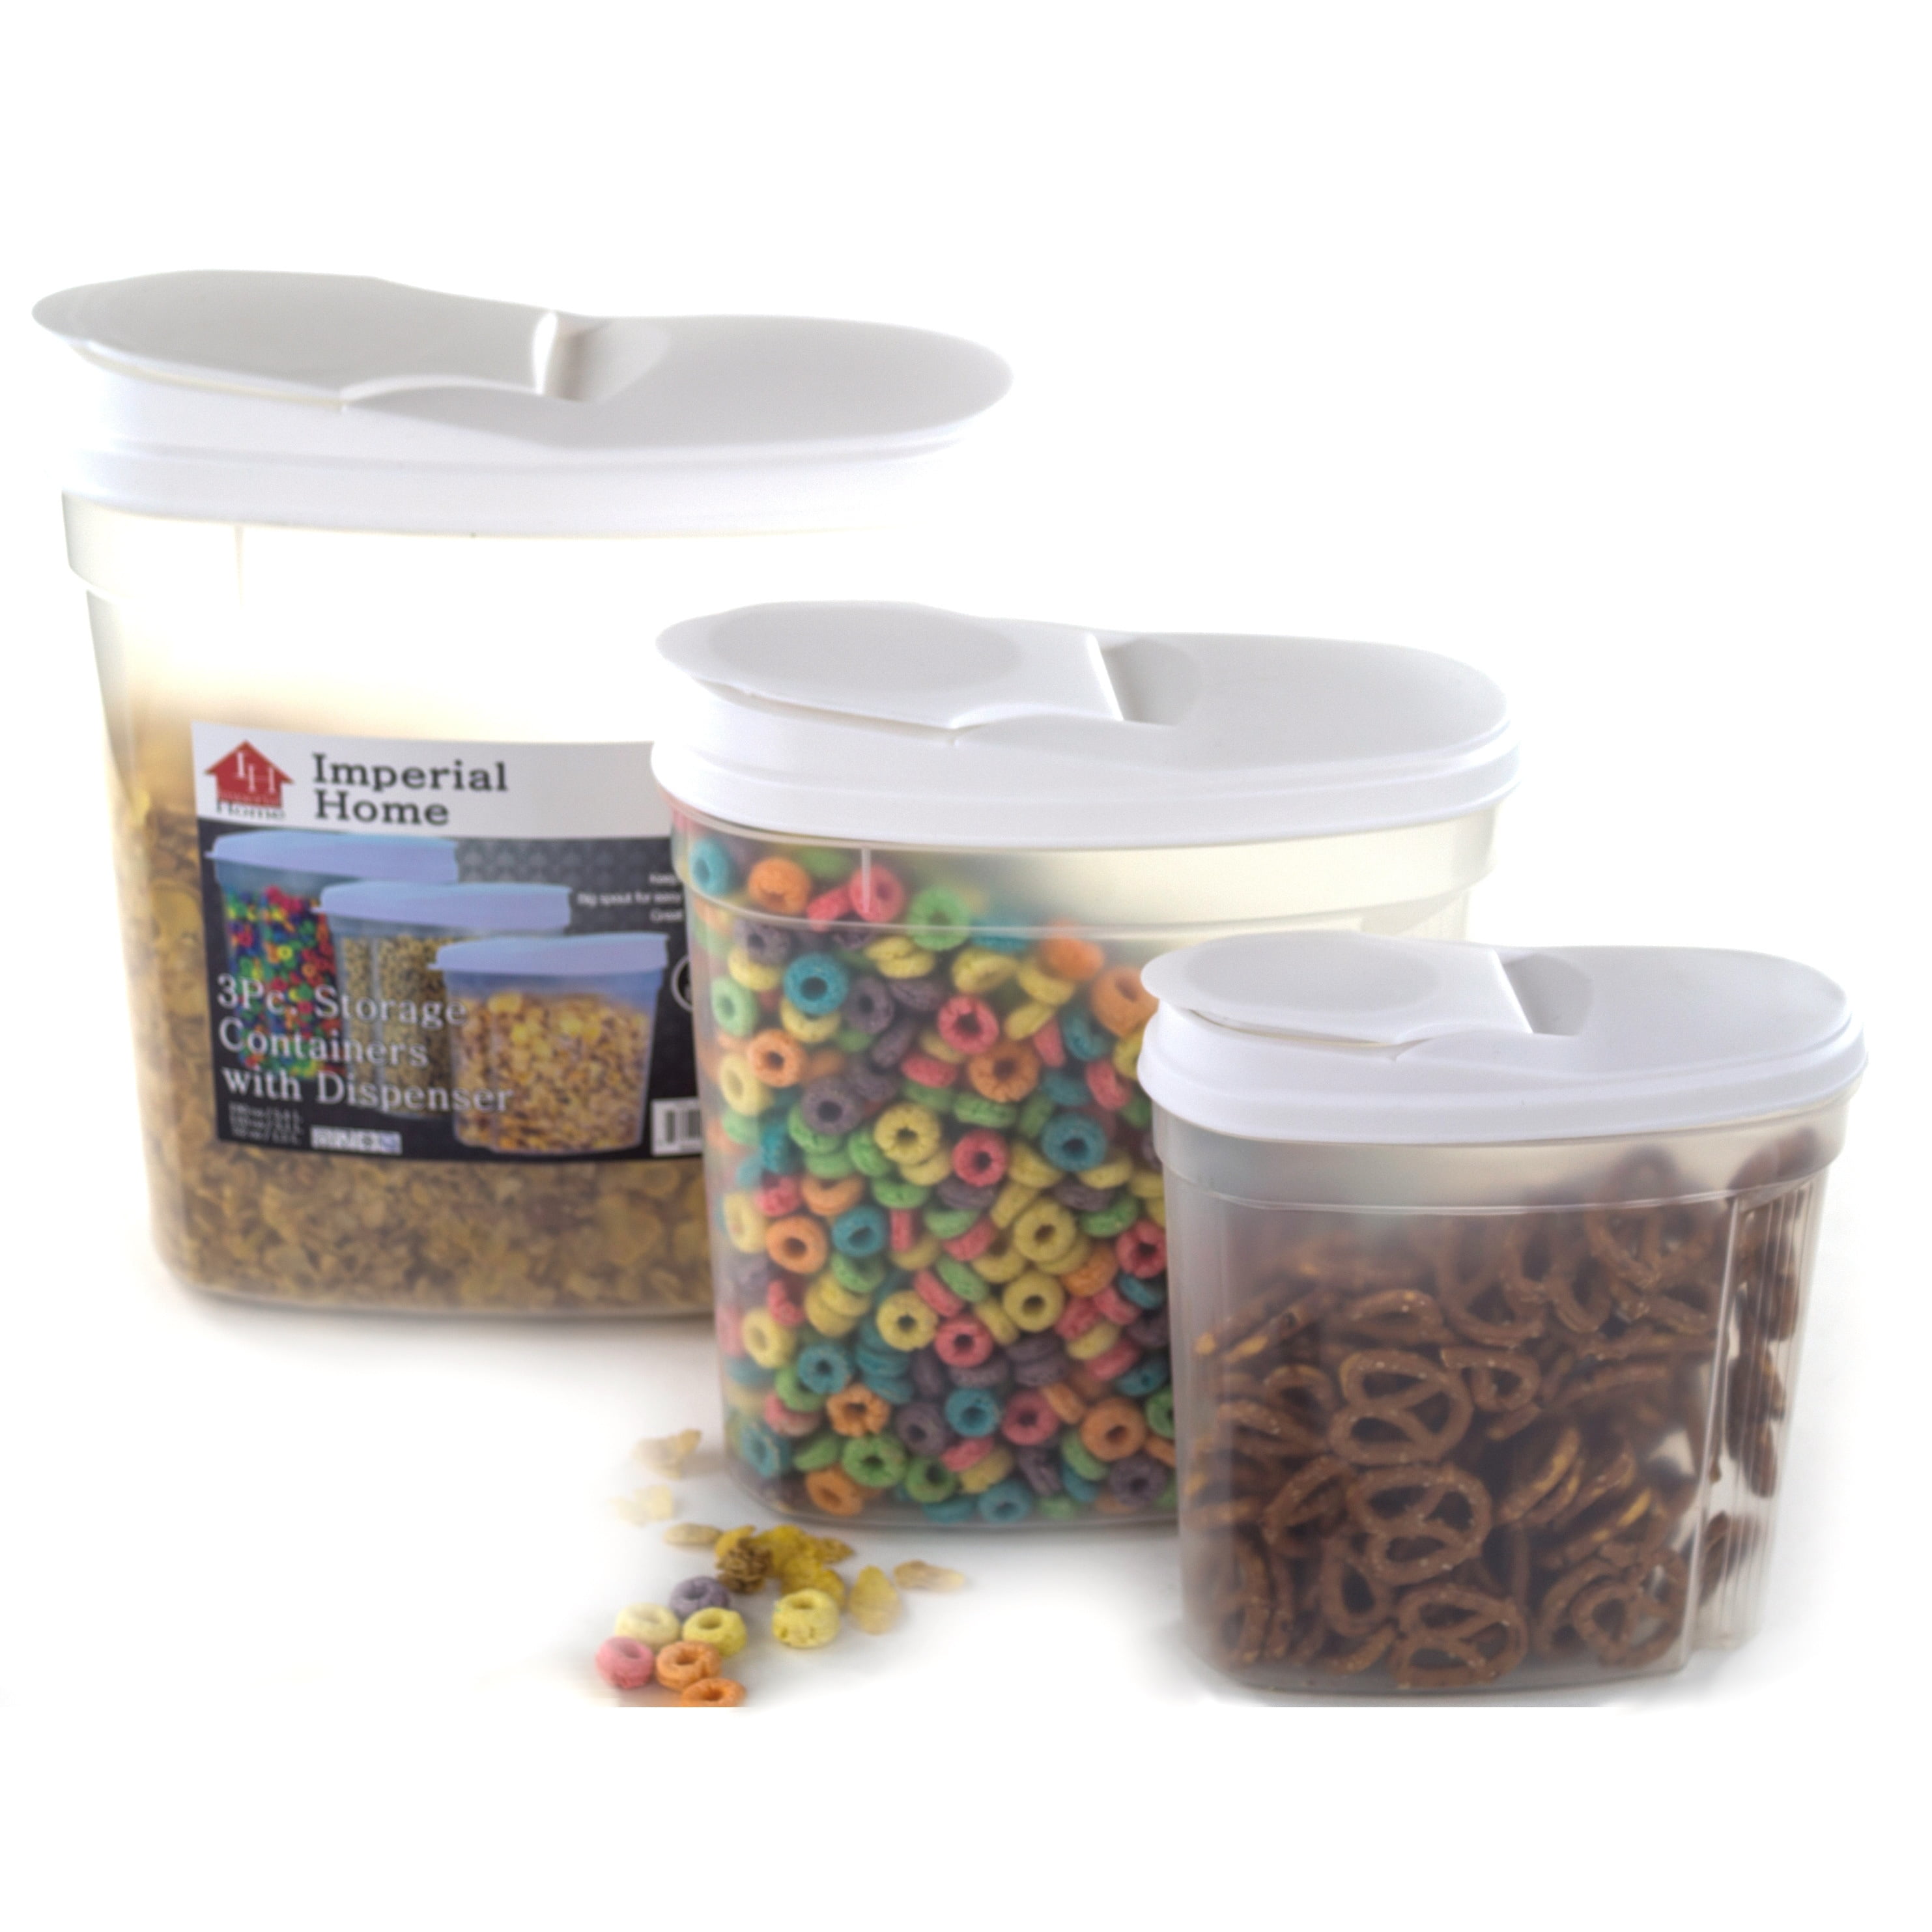 EdgeStar plastic cereal dispensers 3 pc set - bpa free plastic food